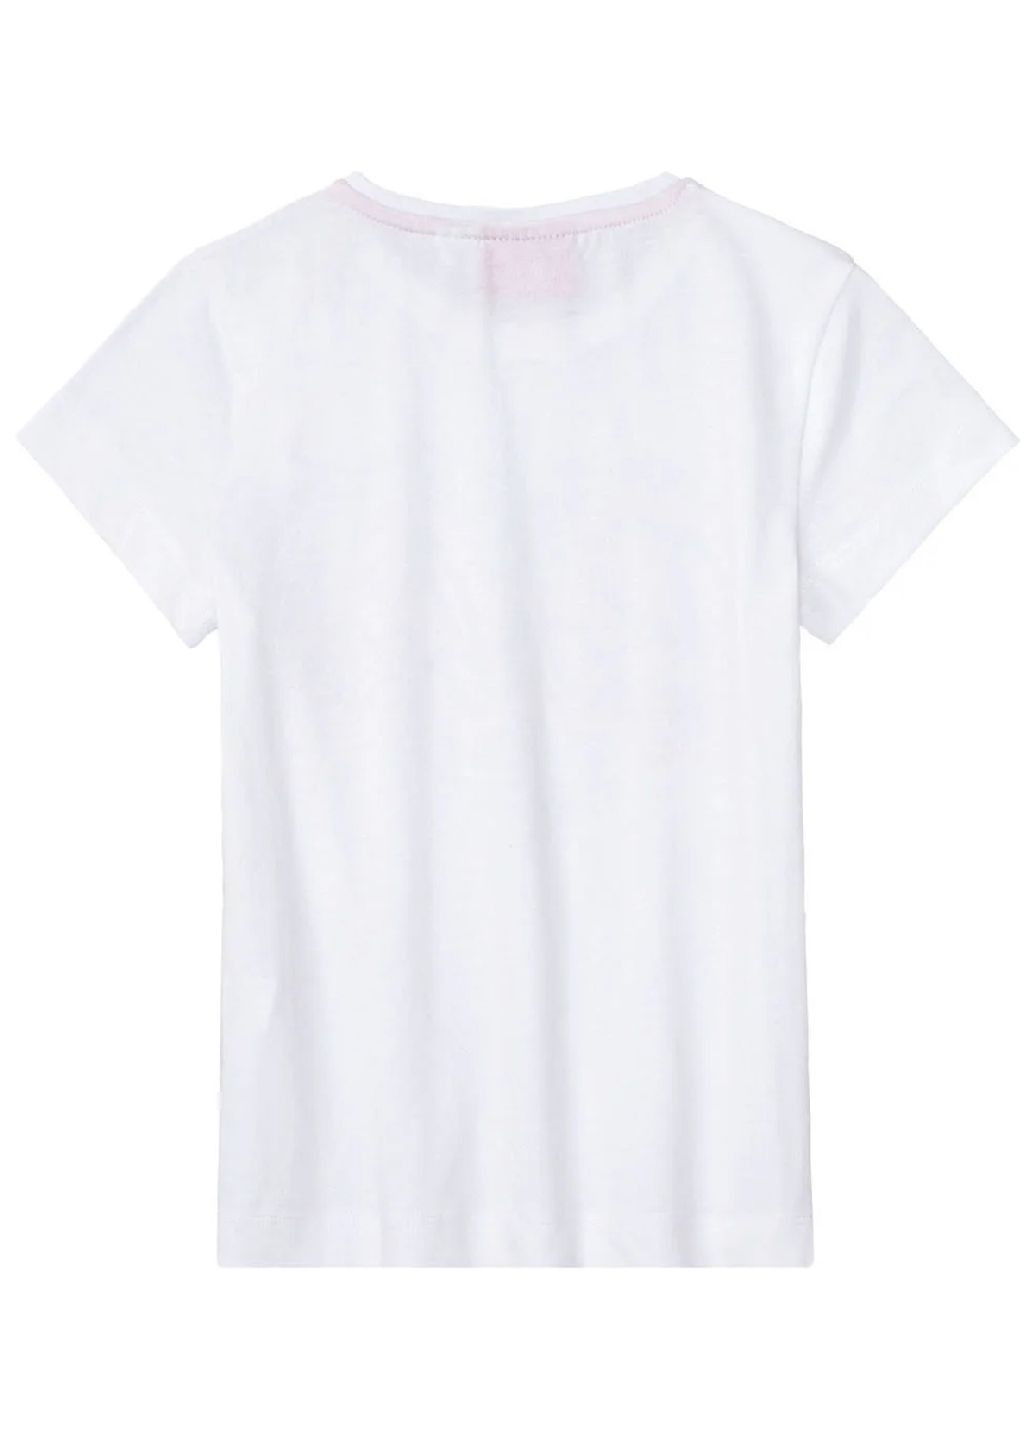 Комбинированная всесезон пижама (футболка, шорты) футболка + шорты Lupilu